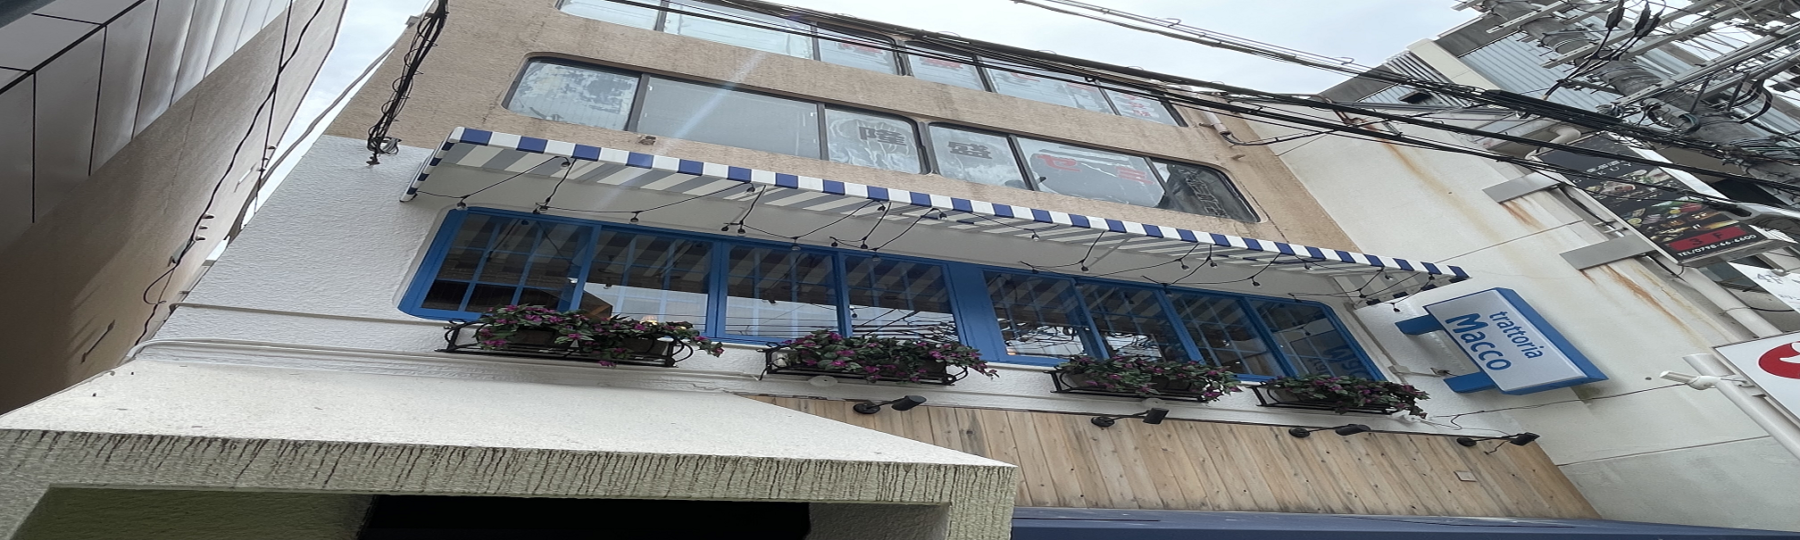 ☆祝オープン☆ trattoria Macco ～トラットリア マッコ～西宮北口店さん!☆青と白のストライプが目印の外観です!!